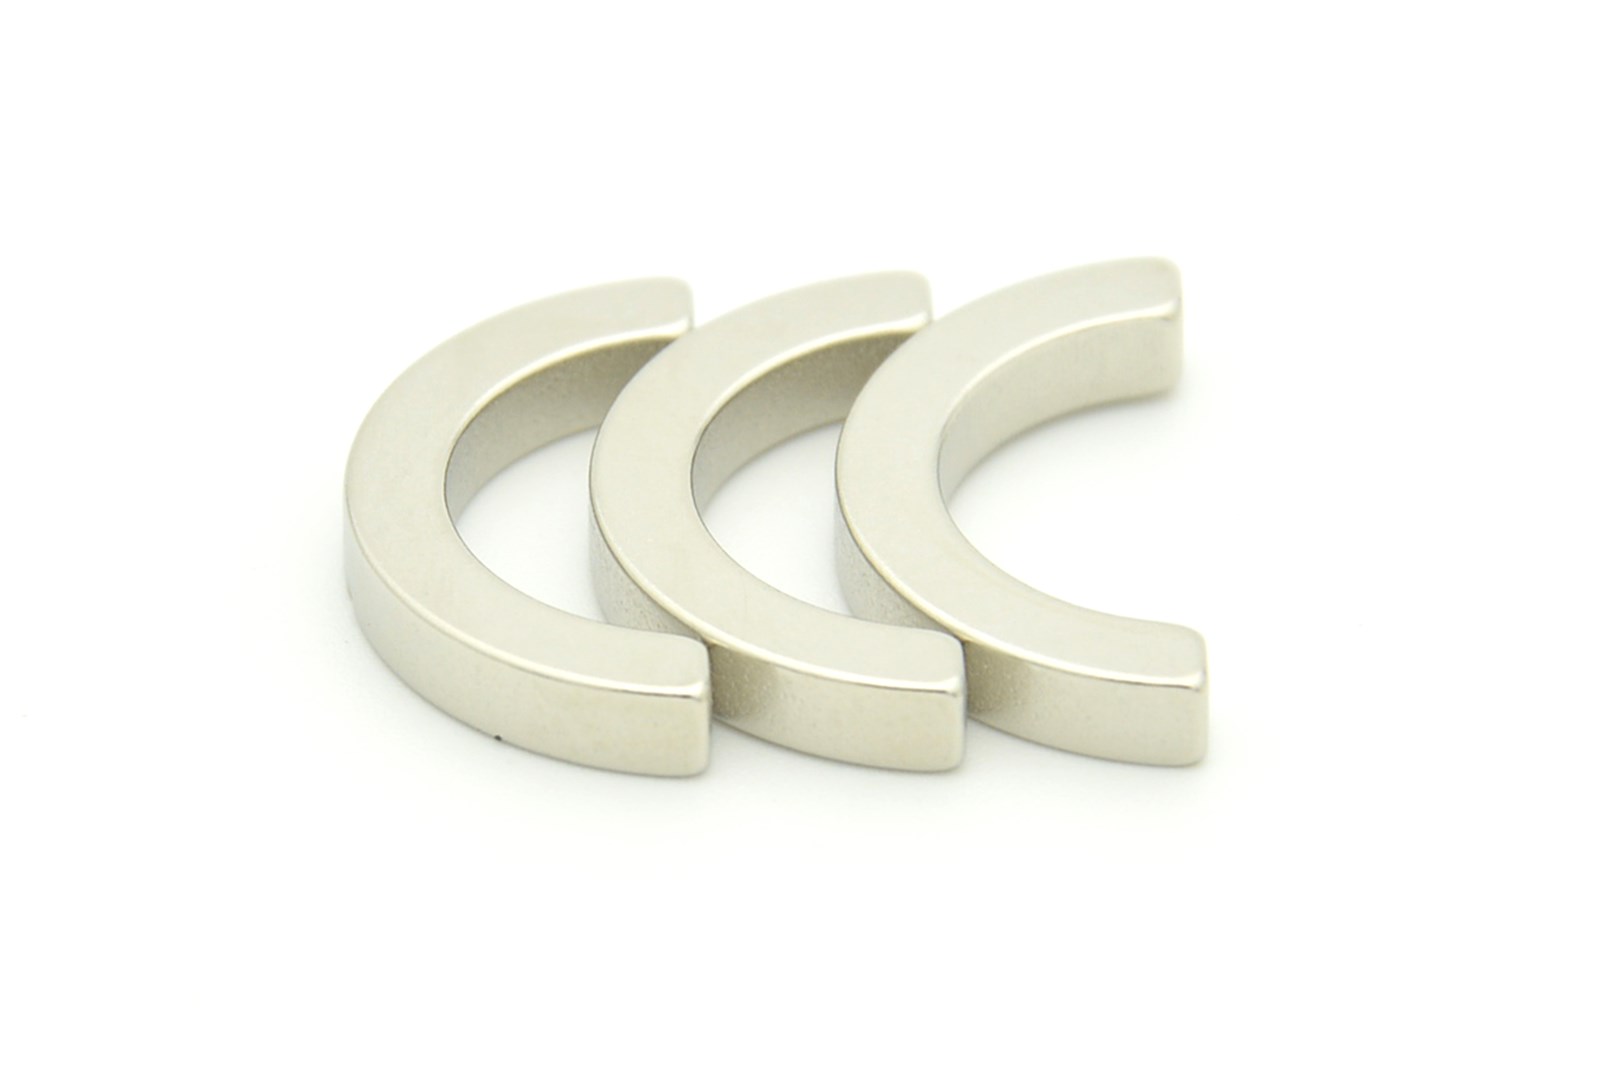 China Custom Half Ring Sintered Neodymium (NdFeB) Magnets